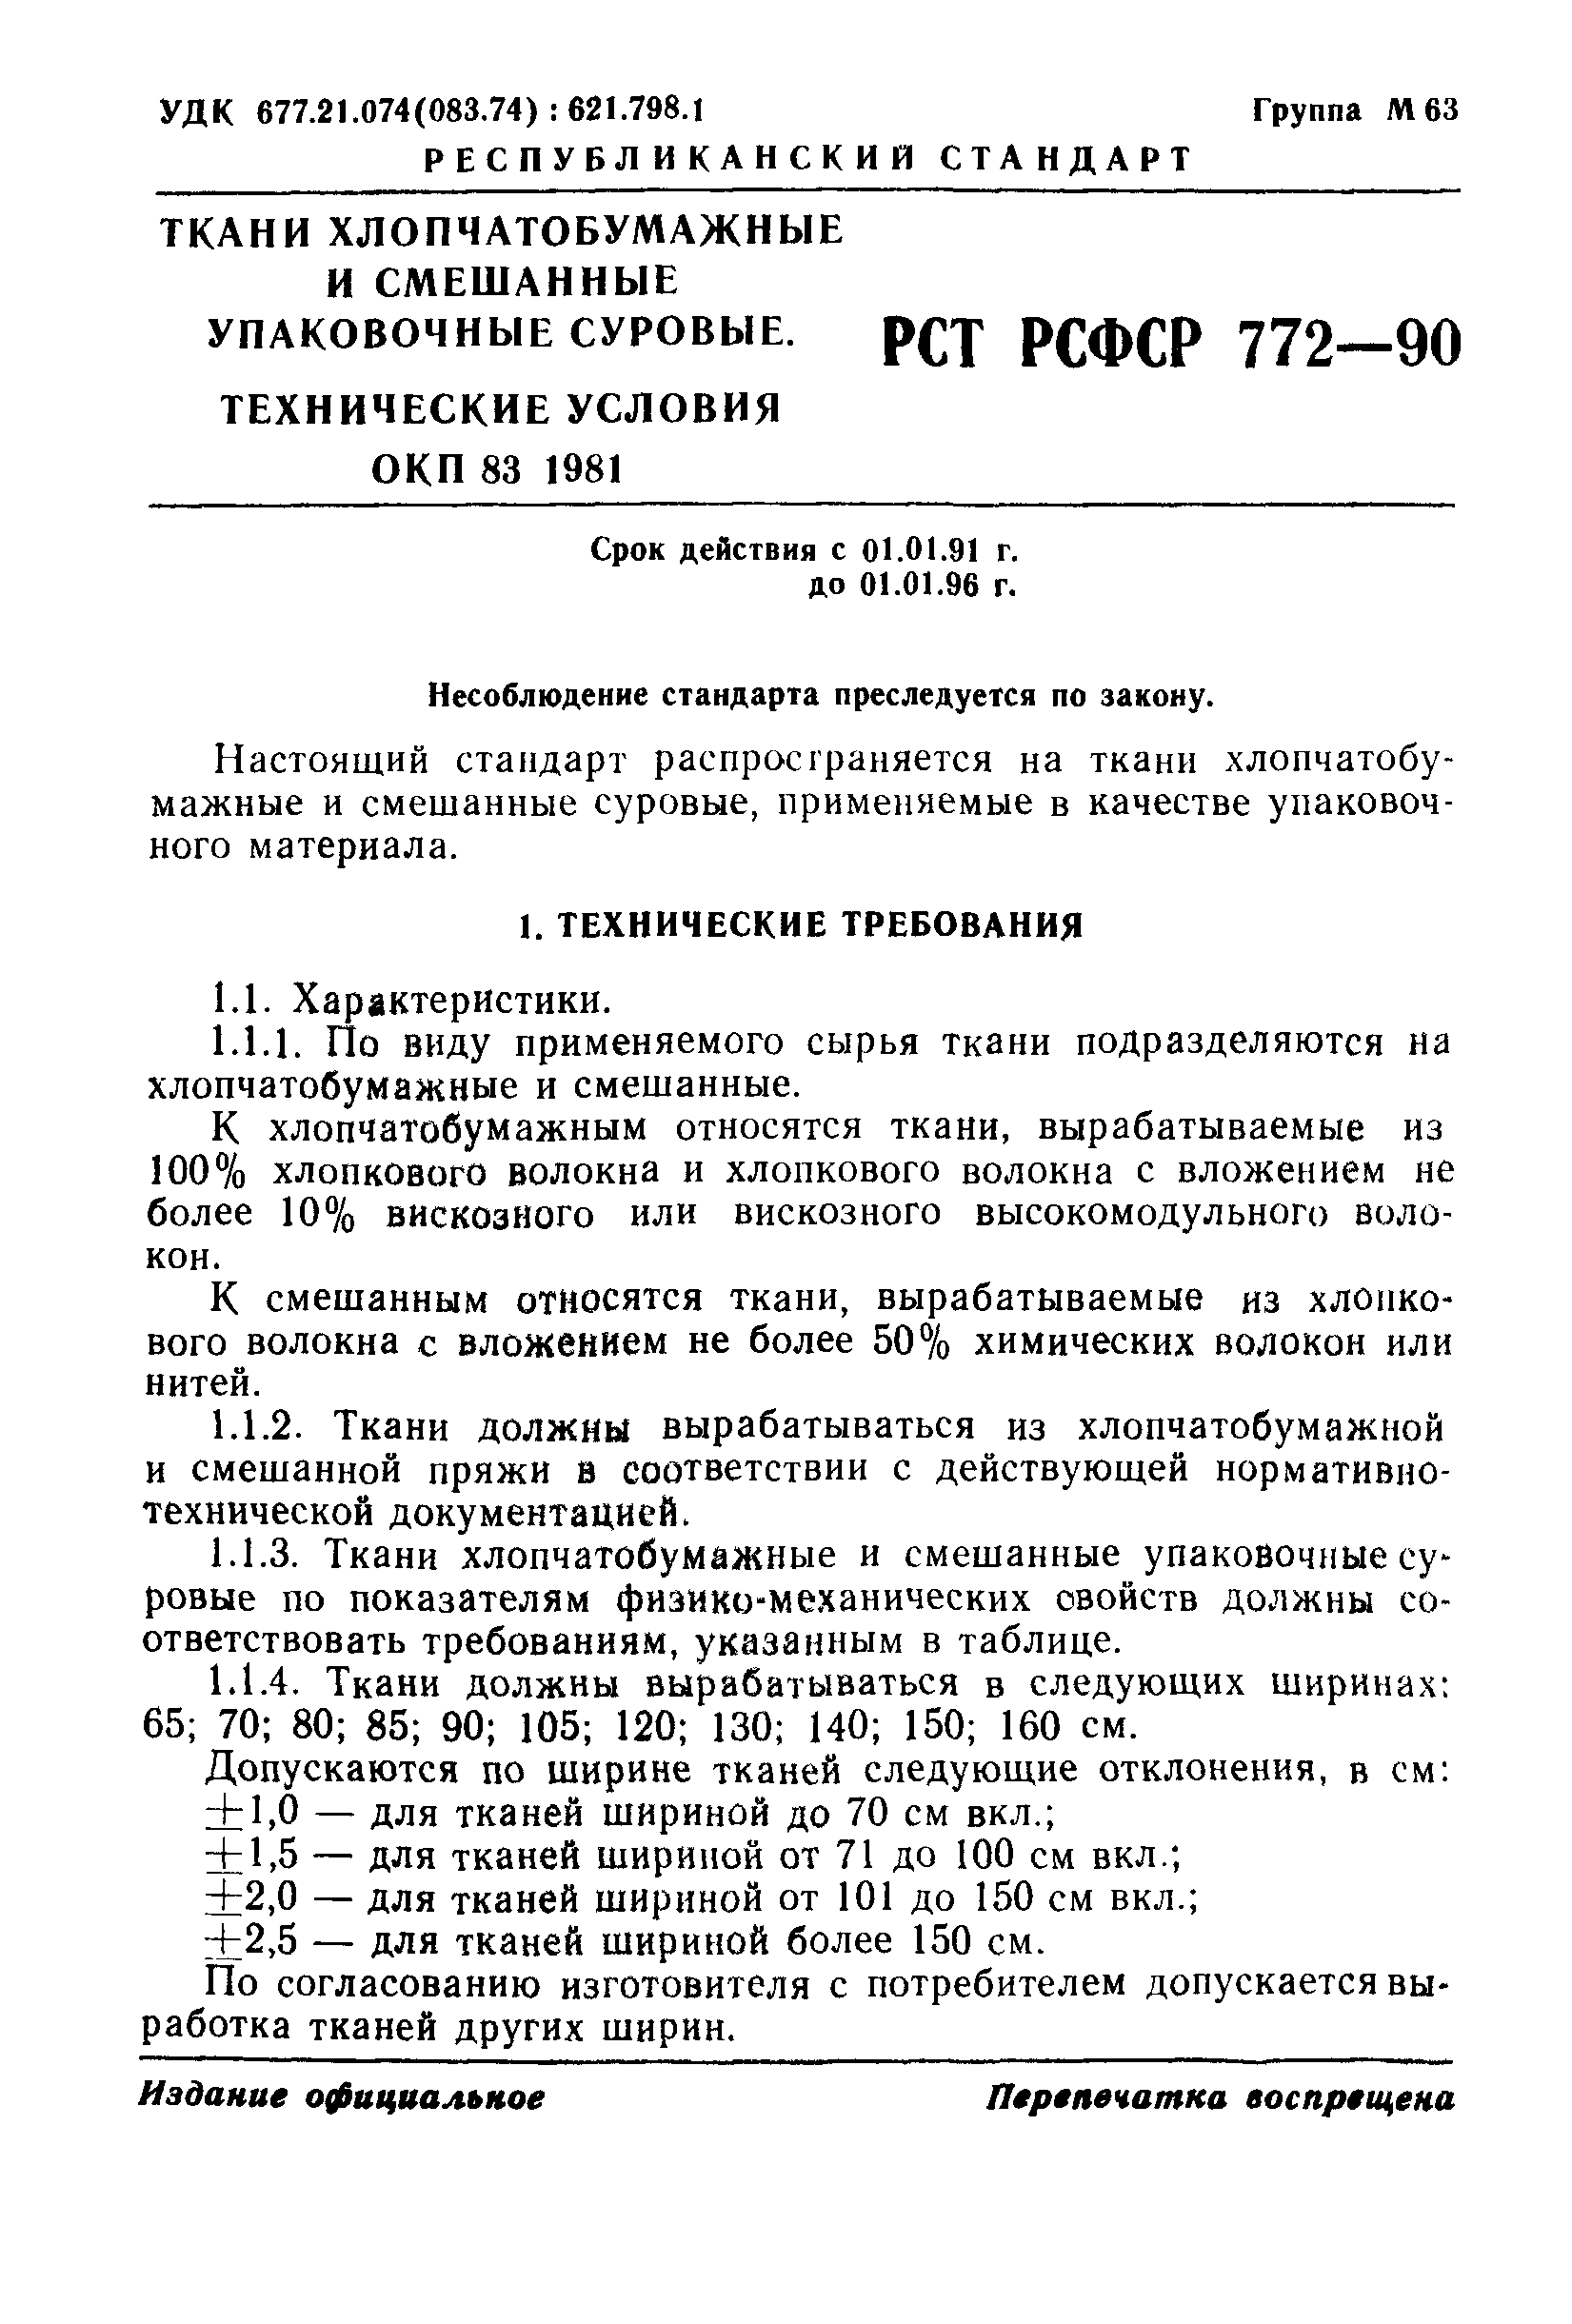 РСТ РСФСР 772-90